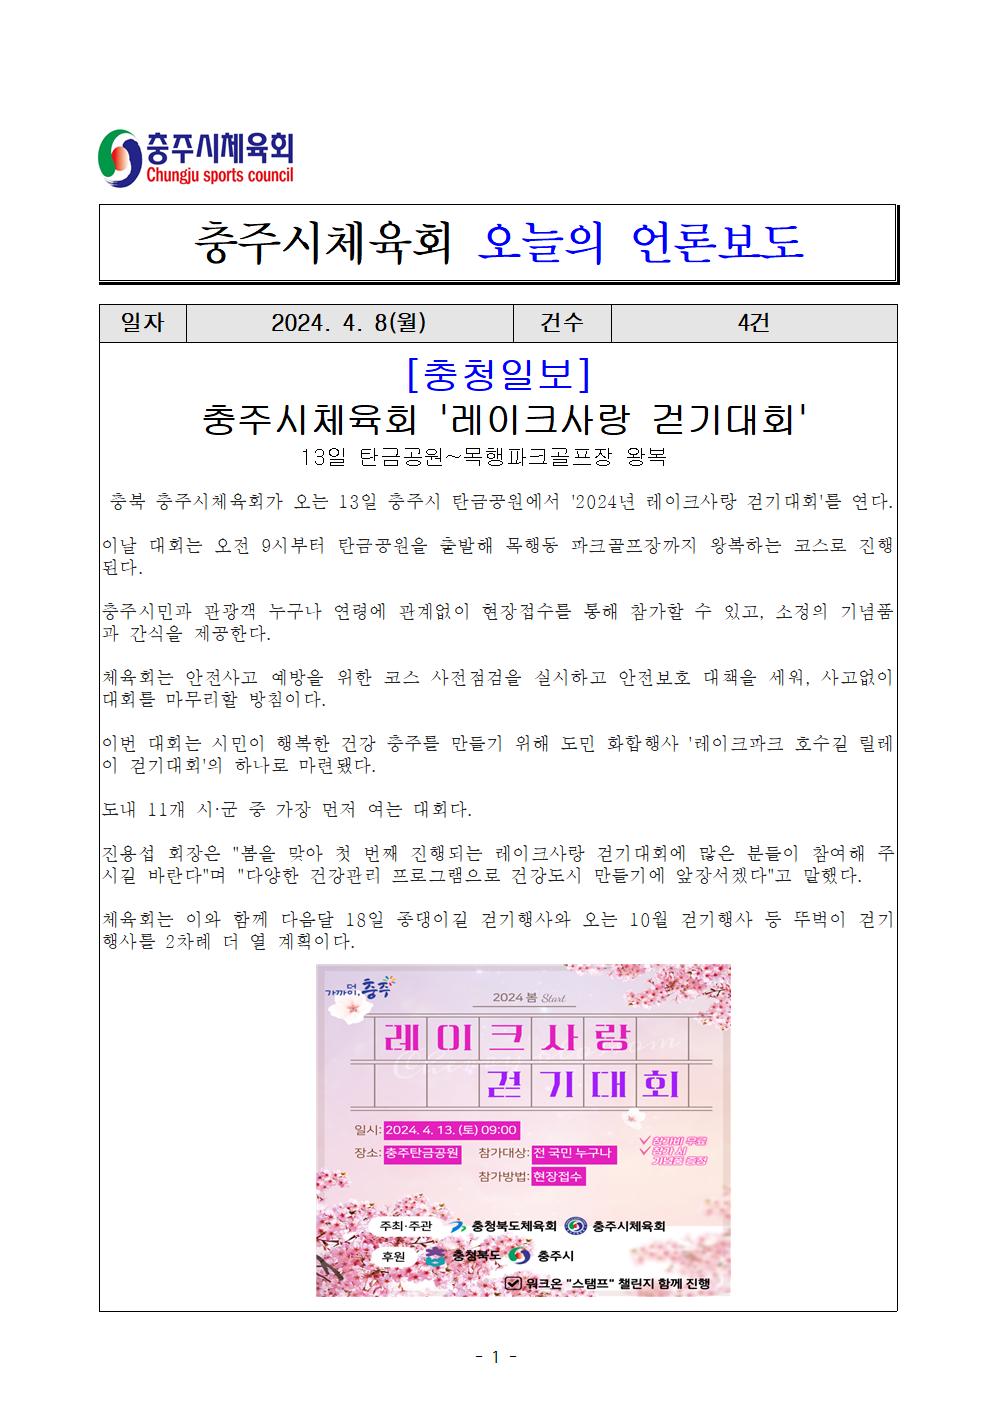 언론보도 충청일보(4. 8일)1.jpg